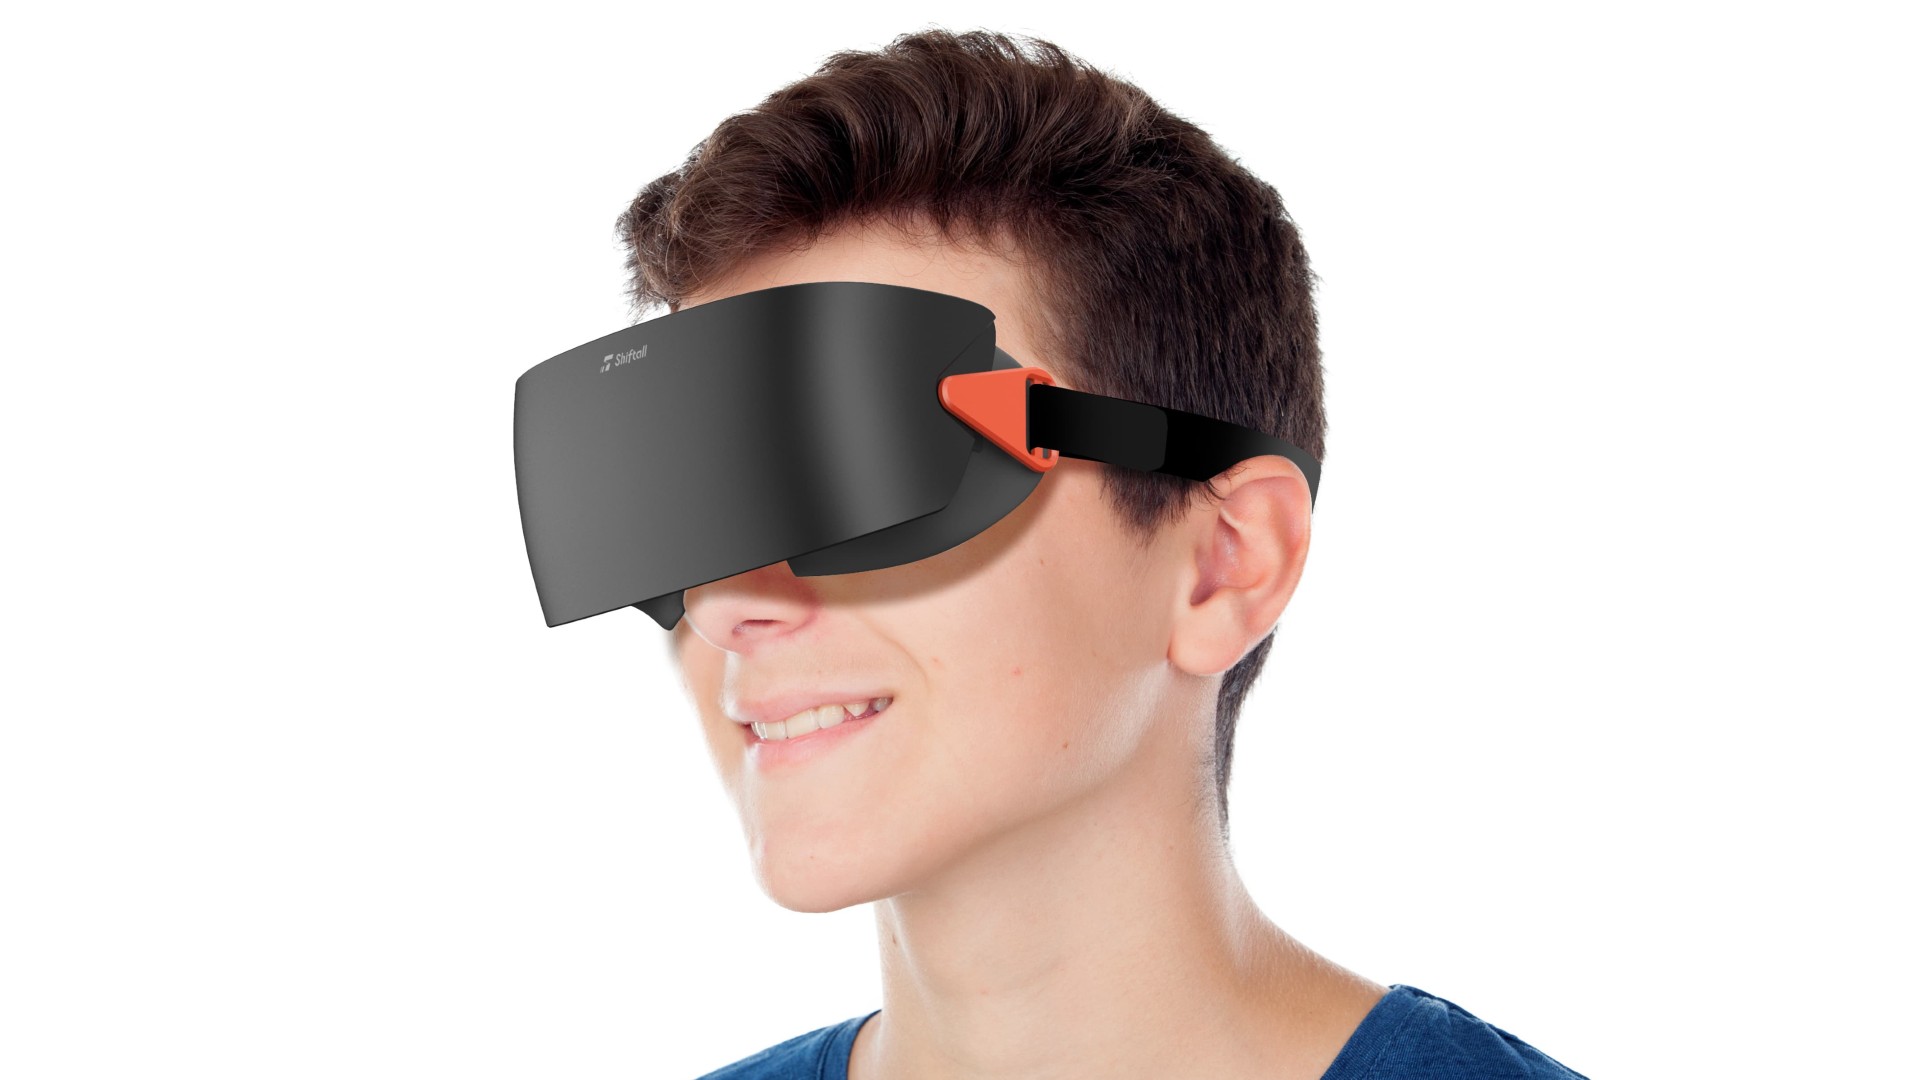 Panasonic VR Startup Shiftall Announces ‘superlight’ PC VR Headset, New Full Body Trackers